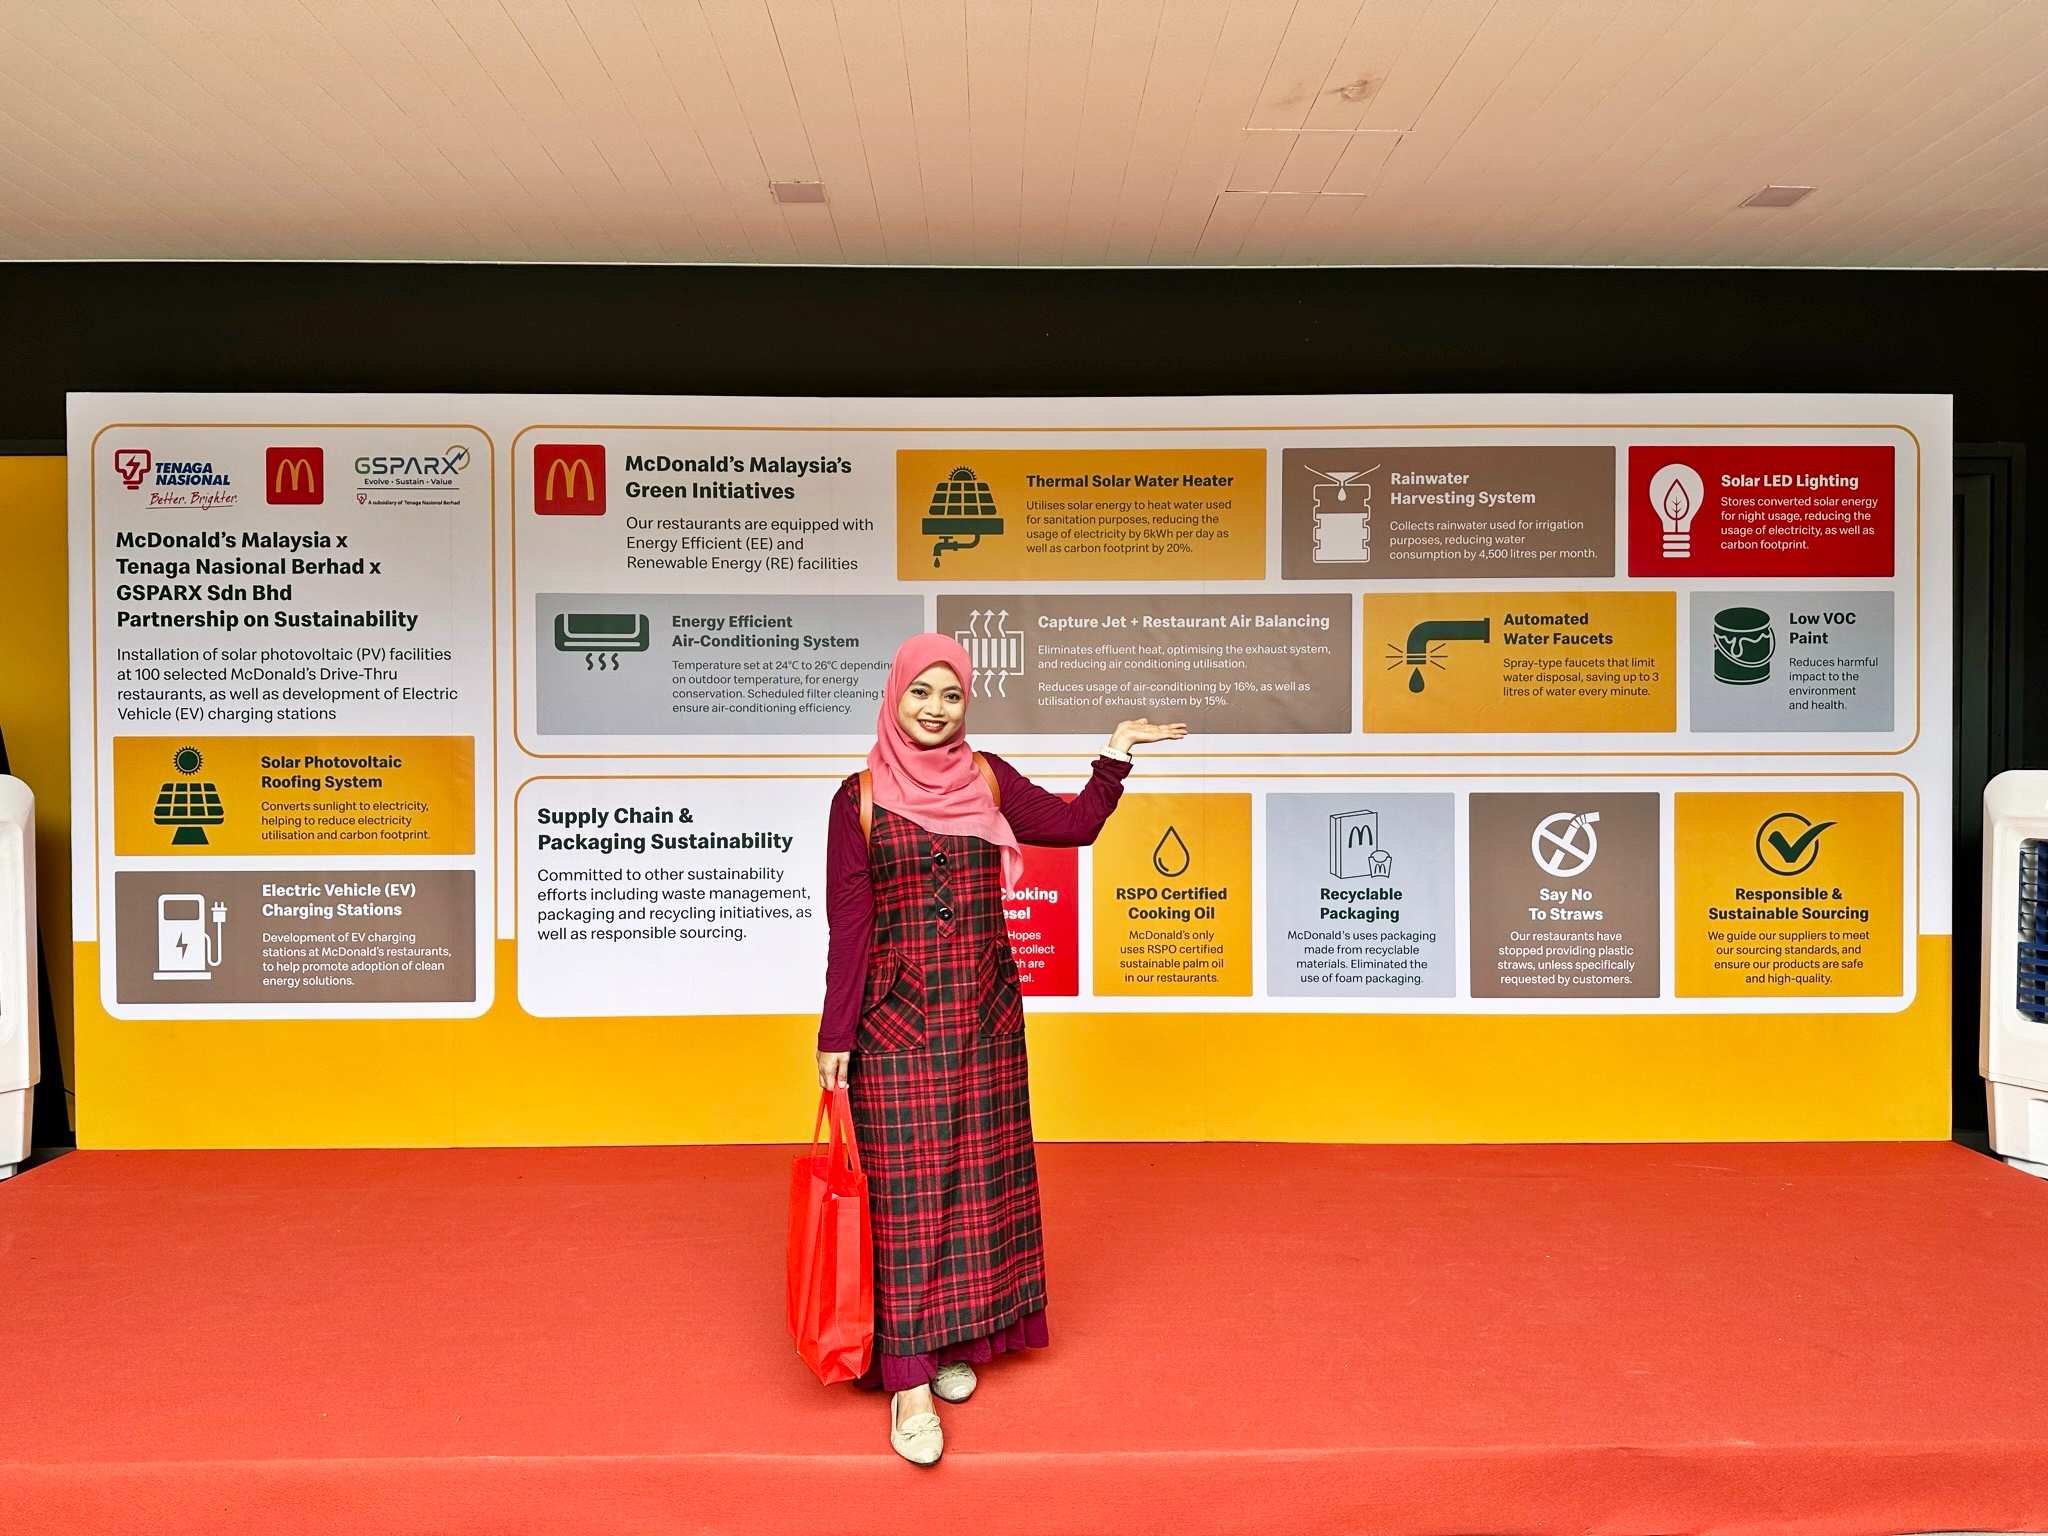 McDonald's Malaysia TNB Dan GSPARX Jalin Kerjasama Kurangkan Jejak Karbon